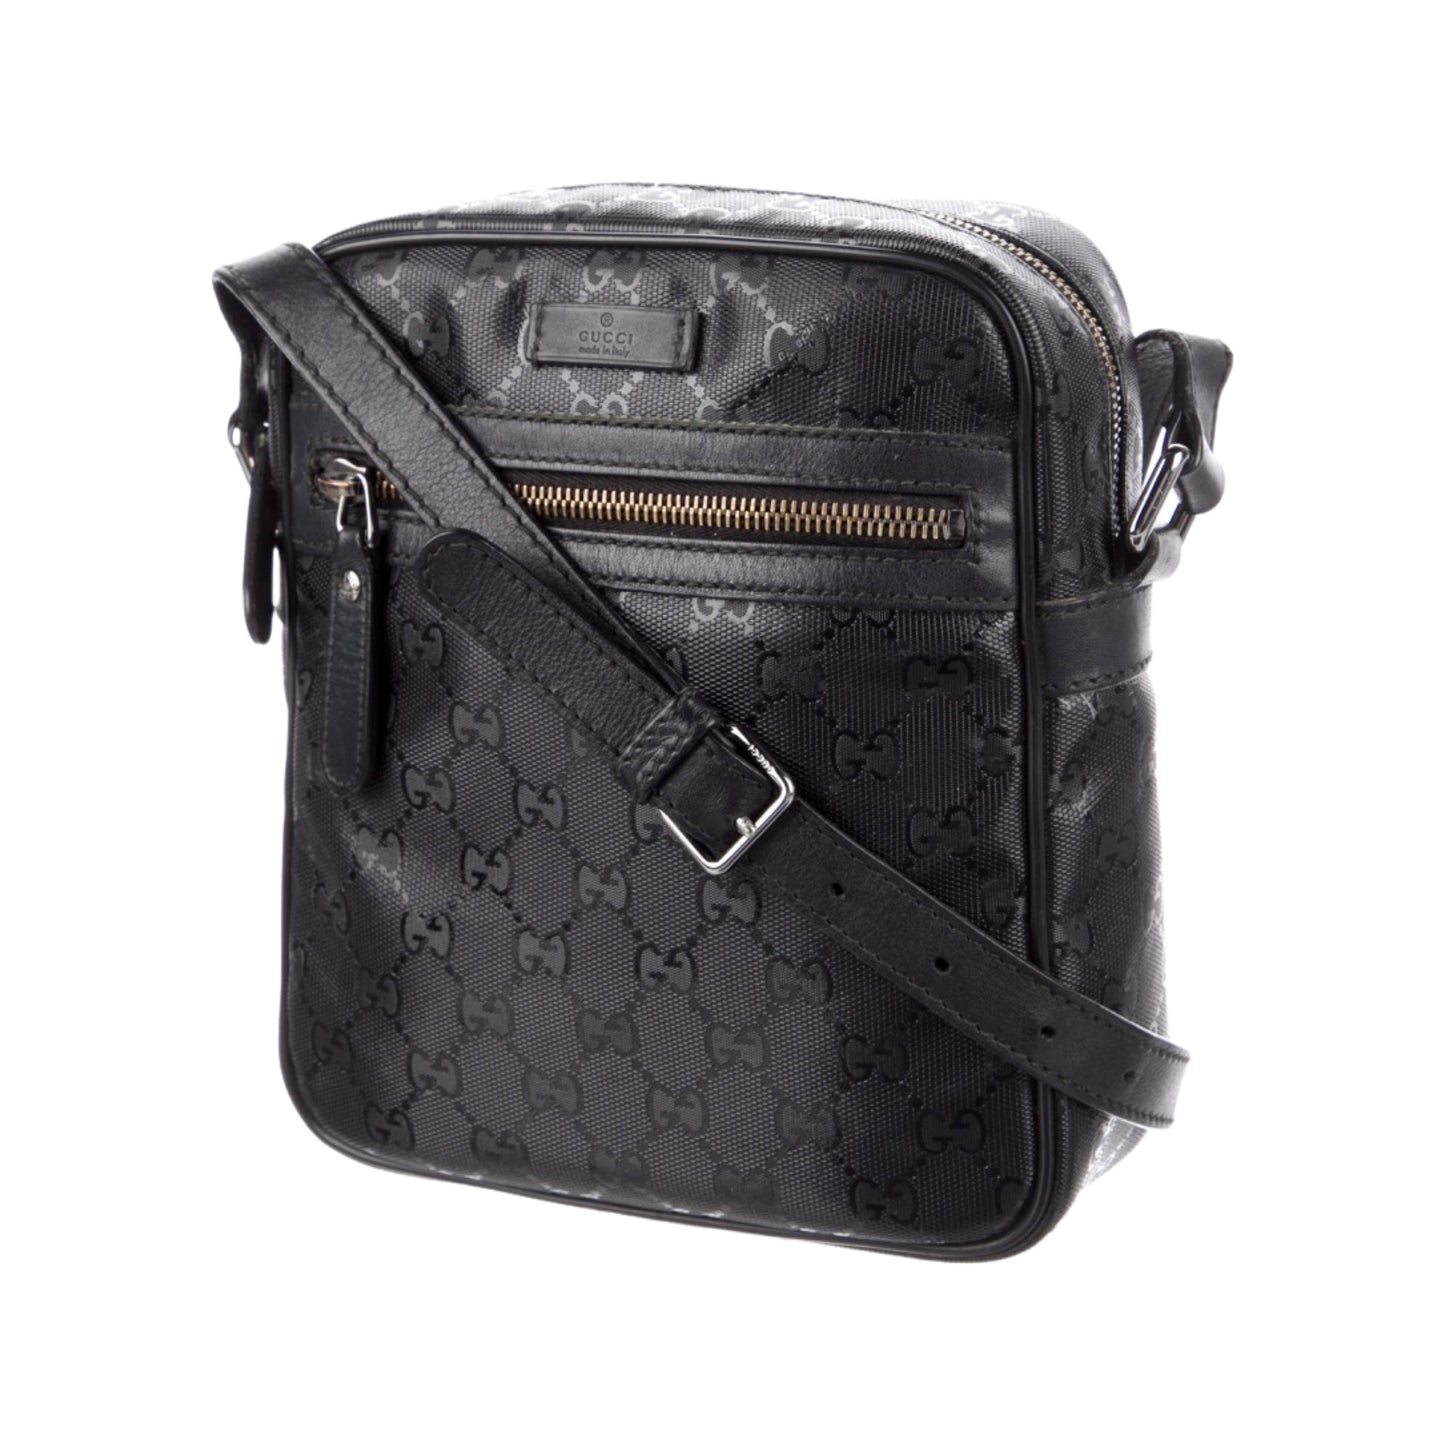 Gucci GG Imprime Messenger Bag